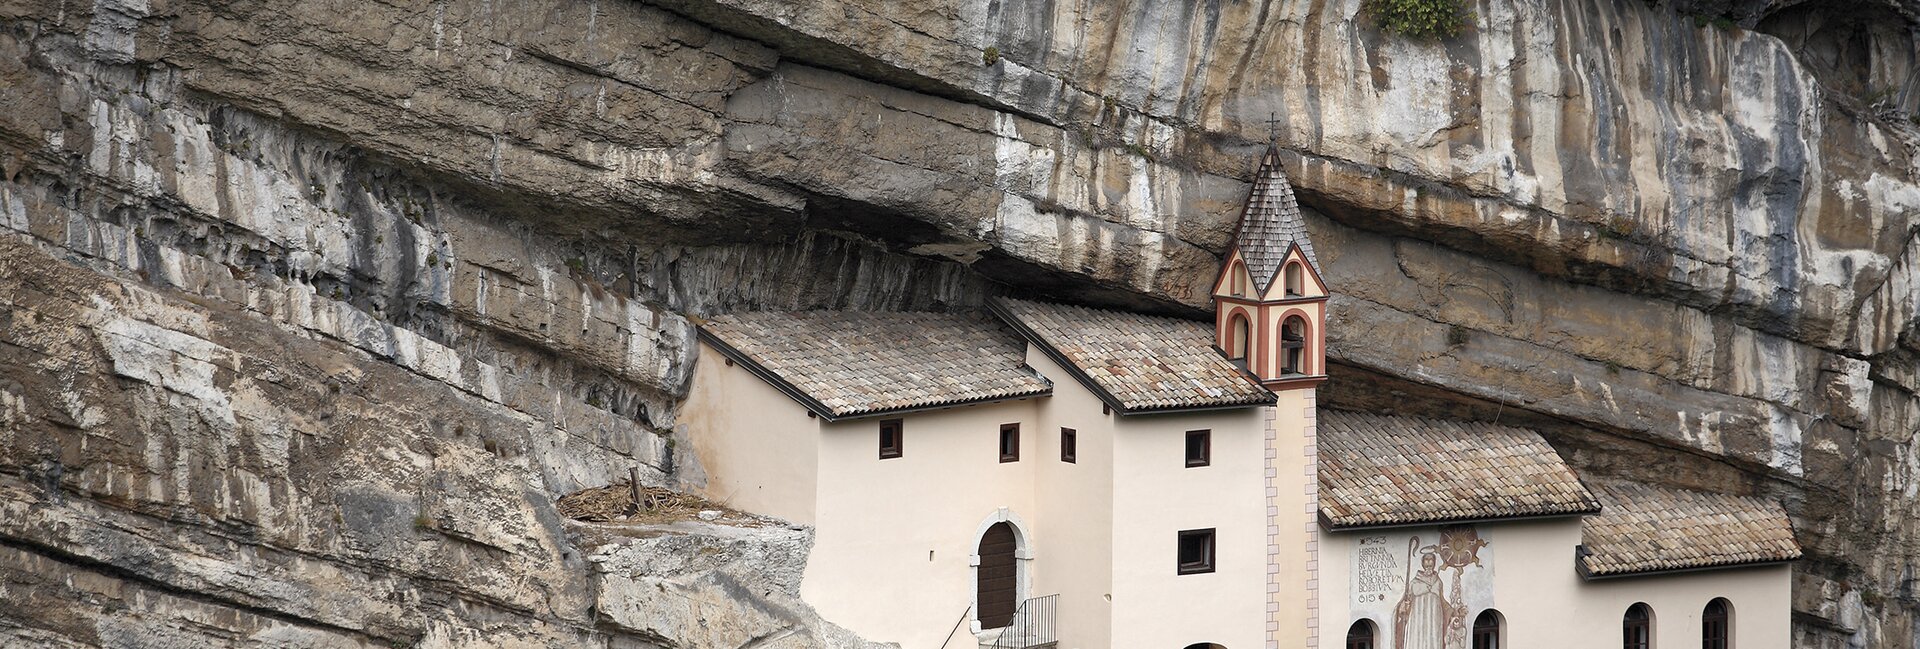 Luoghi religiosi da visitare in Trentino